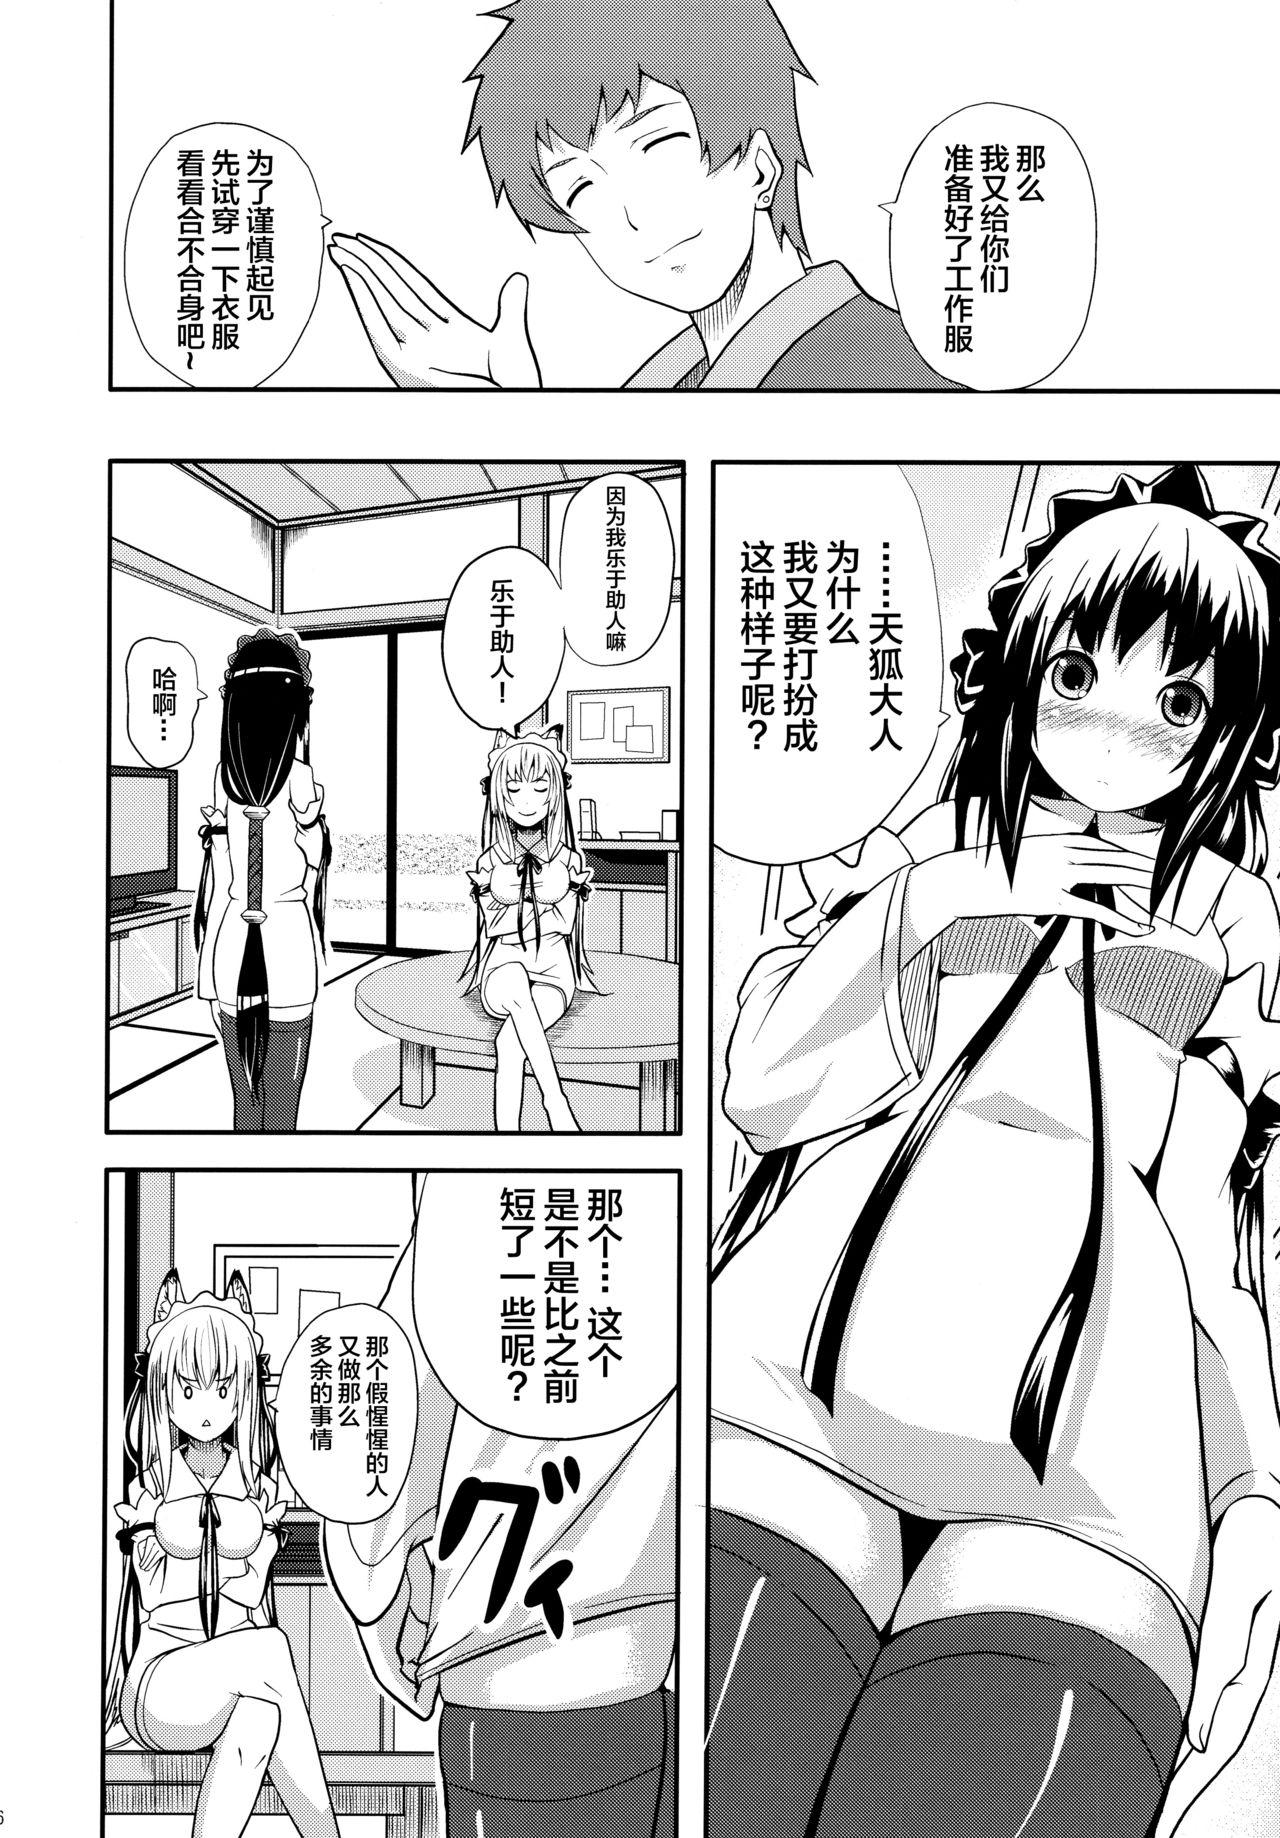 Leather Hare, Tokidoki Oinari-sama 4 - Wagaya no oinari sama Milfsex - Page 6